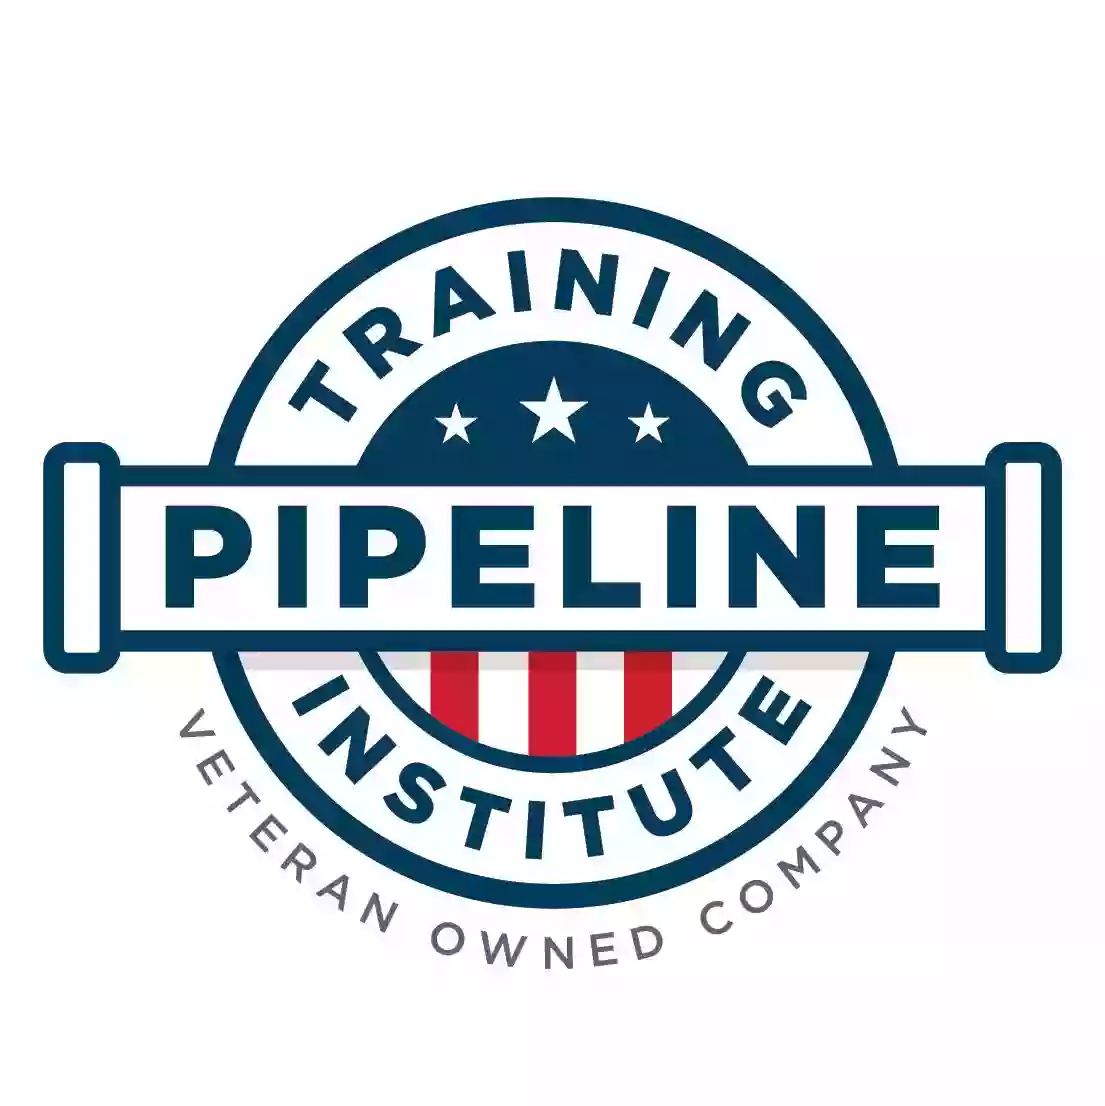 Pipeline Training Institute